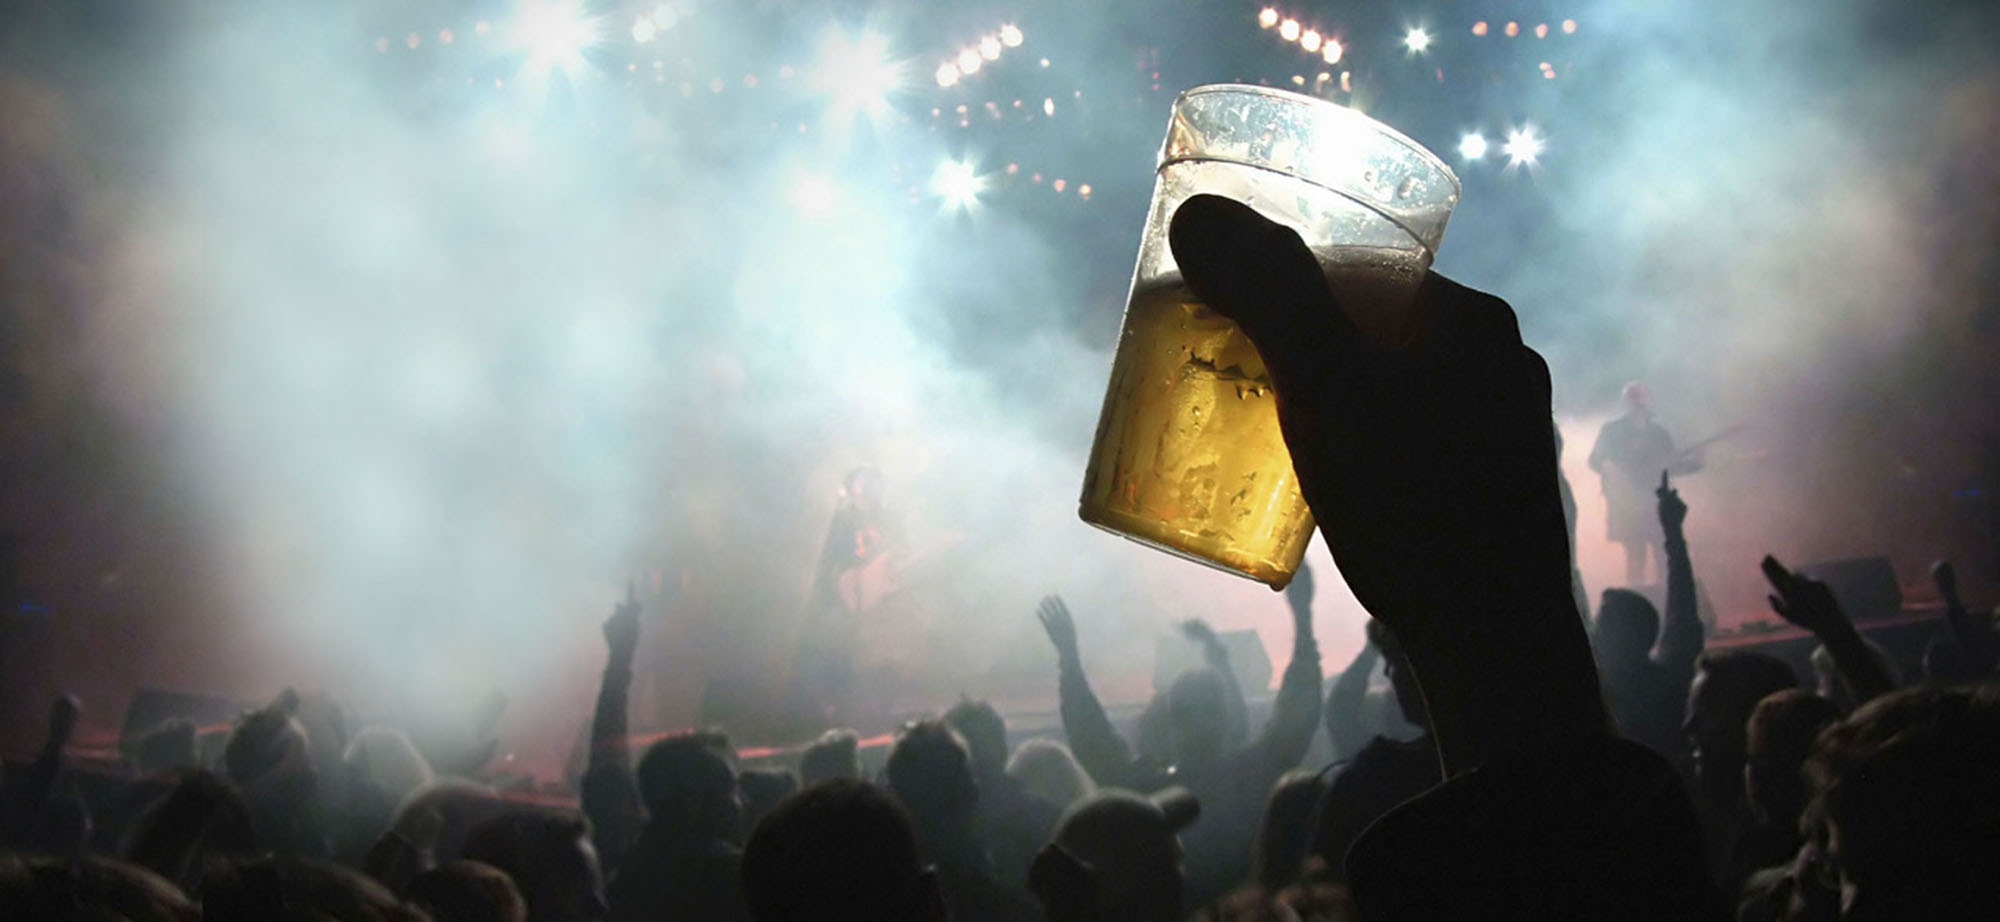 Beer cup held up at rock concert.